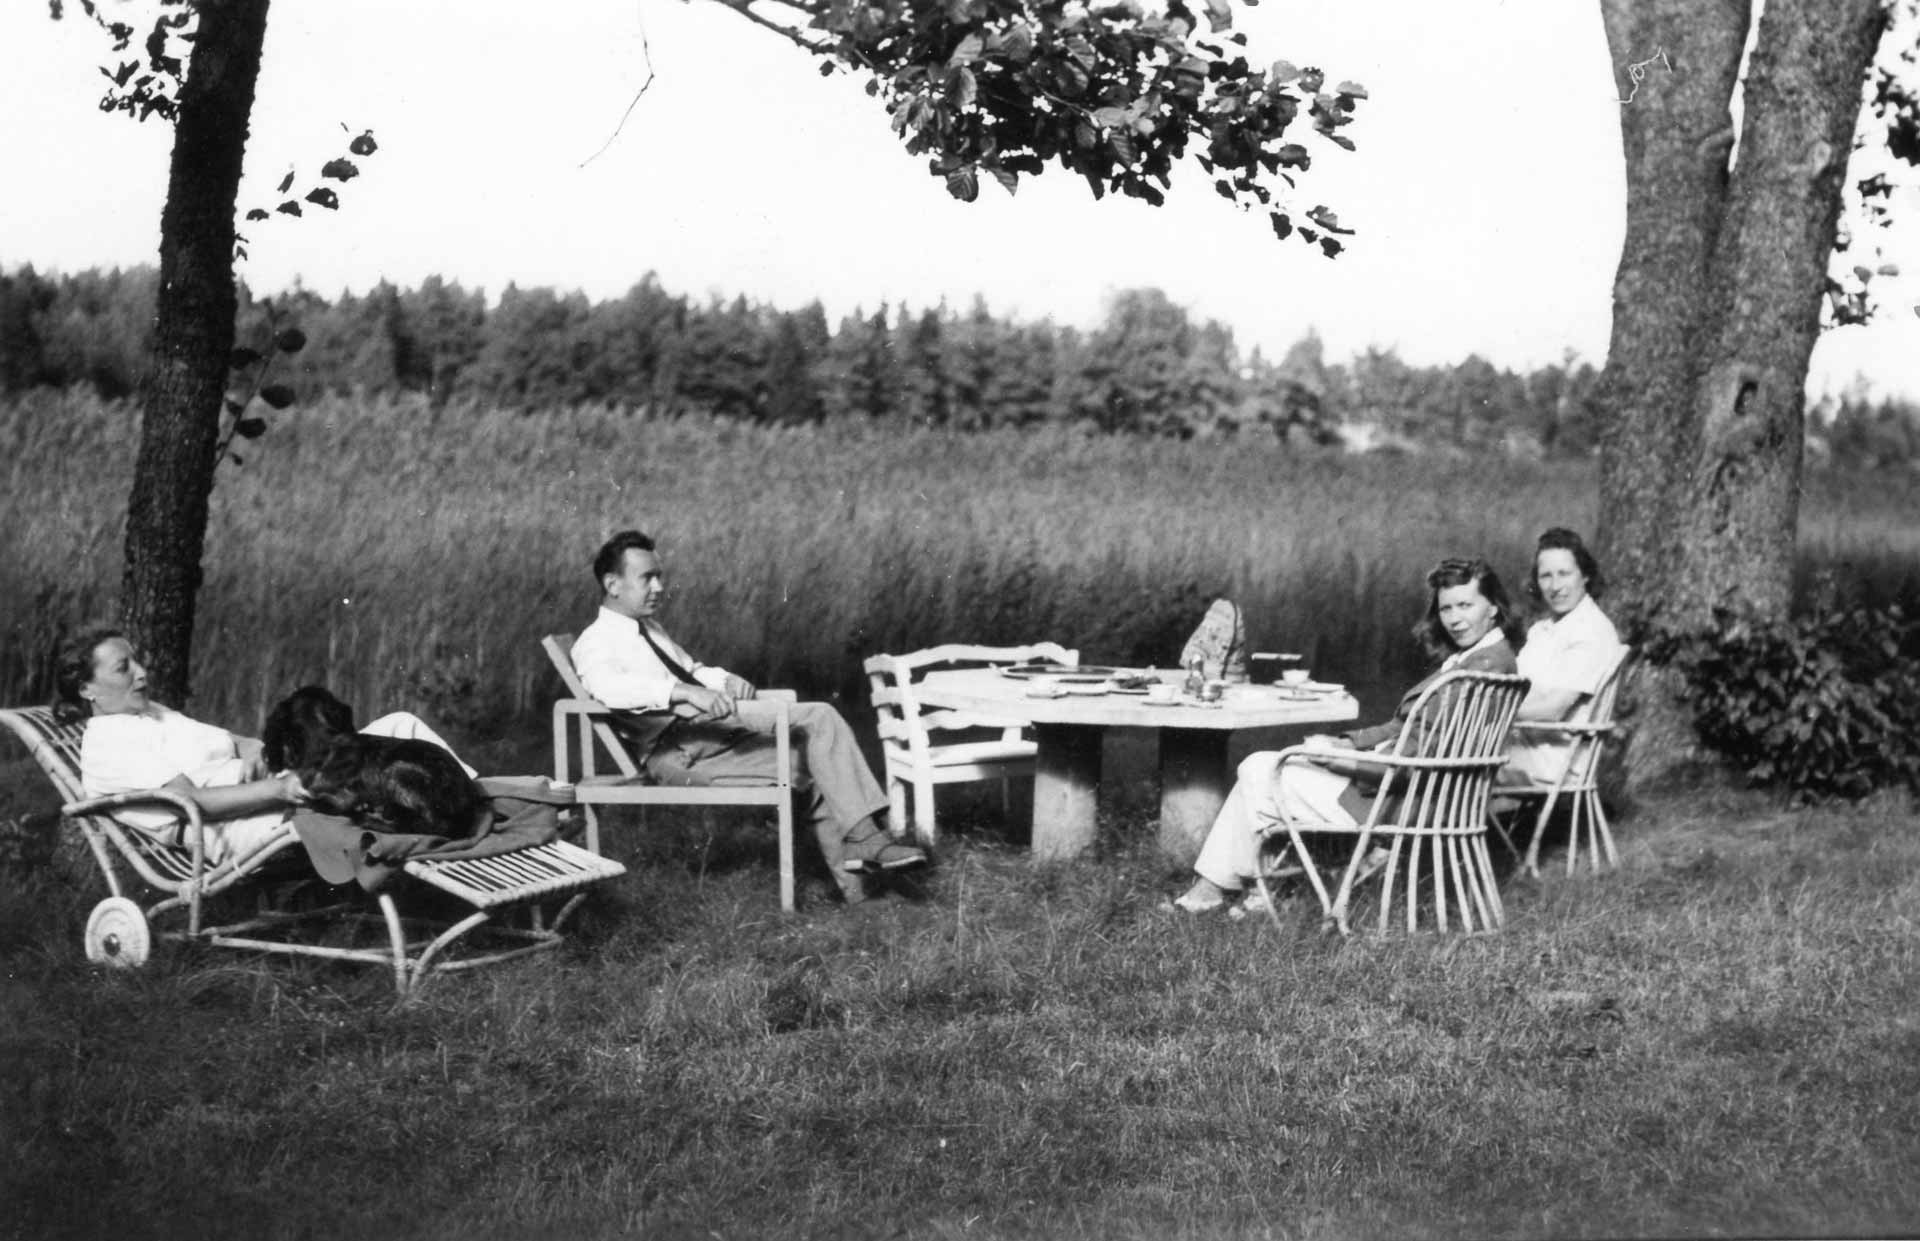 Summertime coffee break in the Lönnströms’ garden in the 1950s.